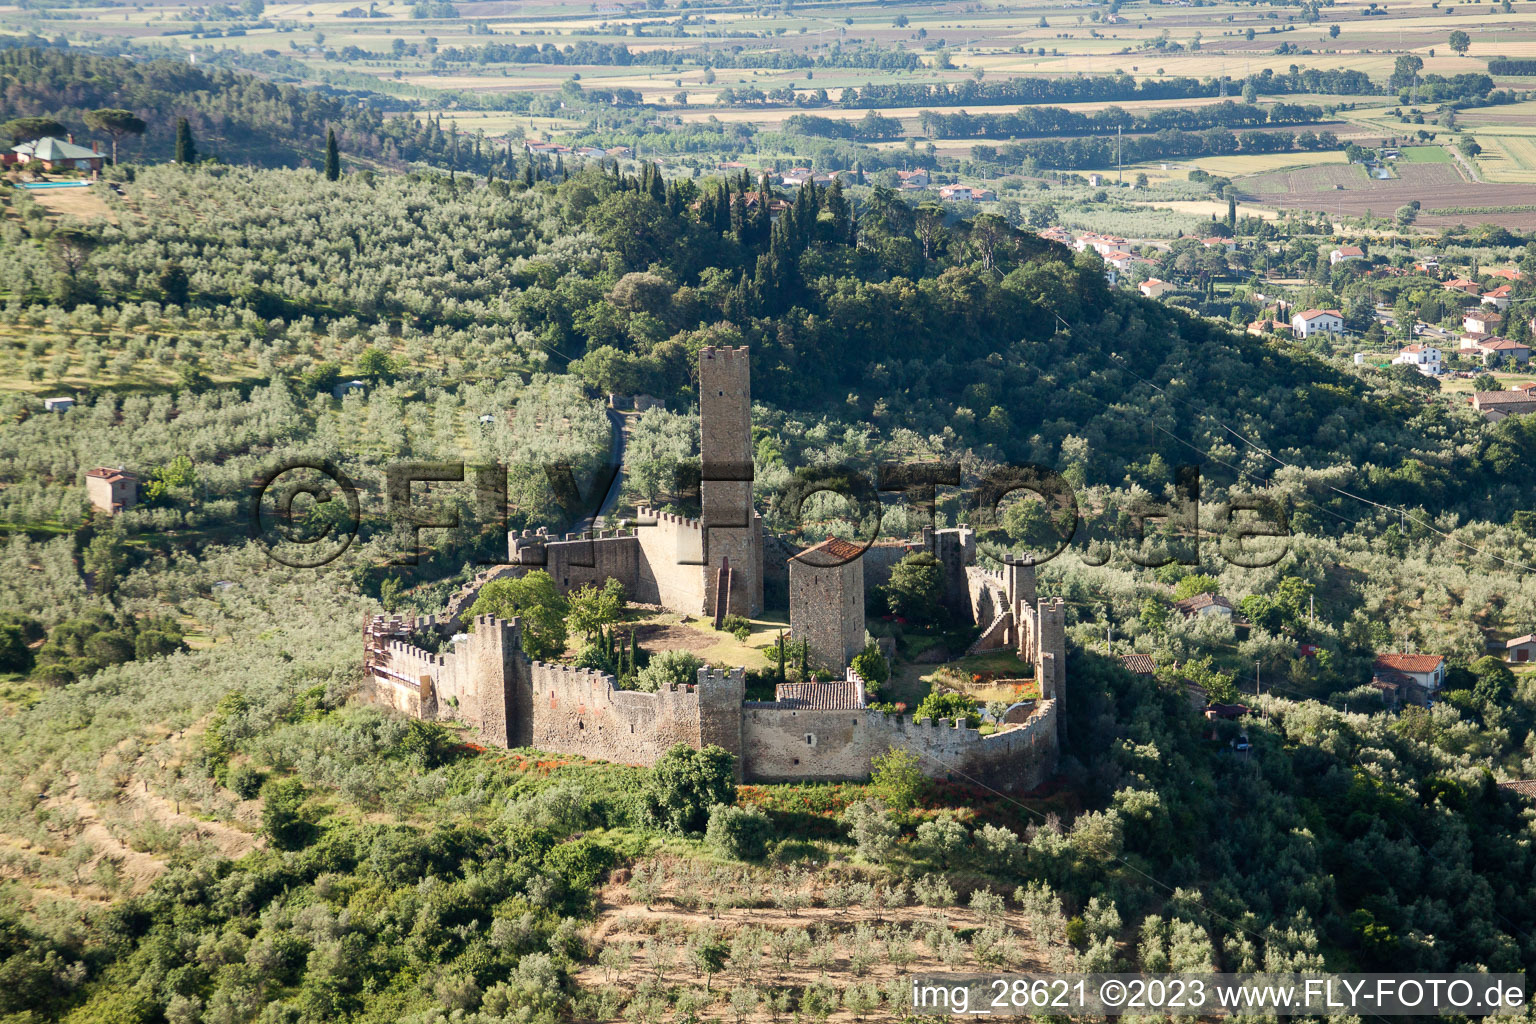 Luftbild von Pergognano im Bundesland Toscana, Italien